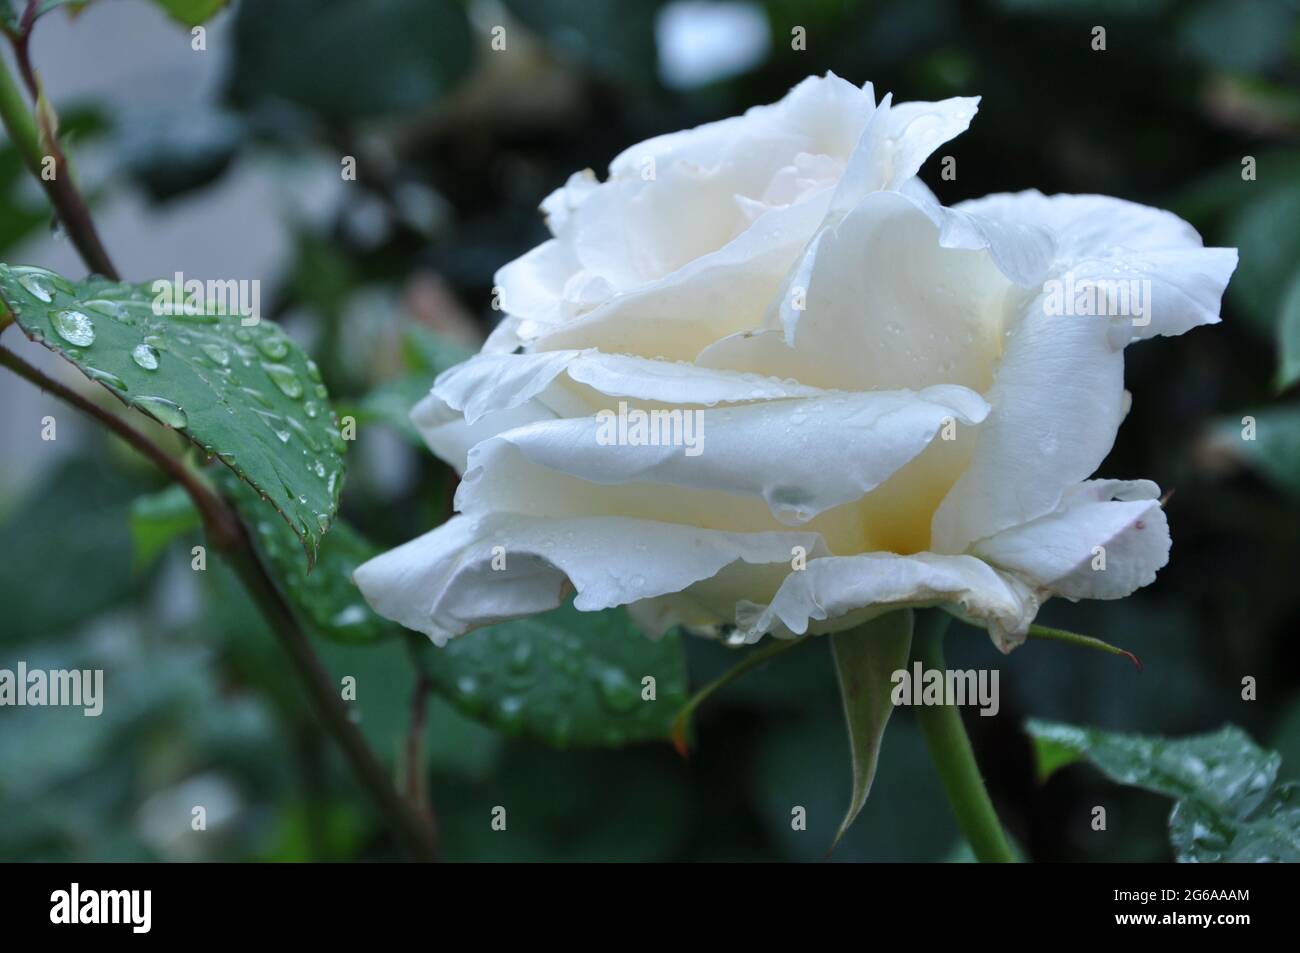 Nasse weiße Rose. Eine weiße Rose, die immer noch nass ist mit Regentropfen. Nasser weißer Rosenhintergrund. Makro Stockfoto